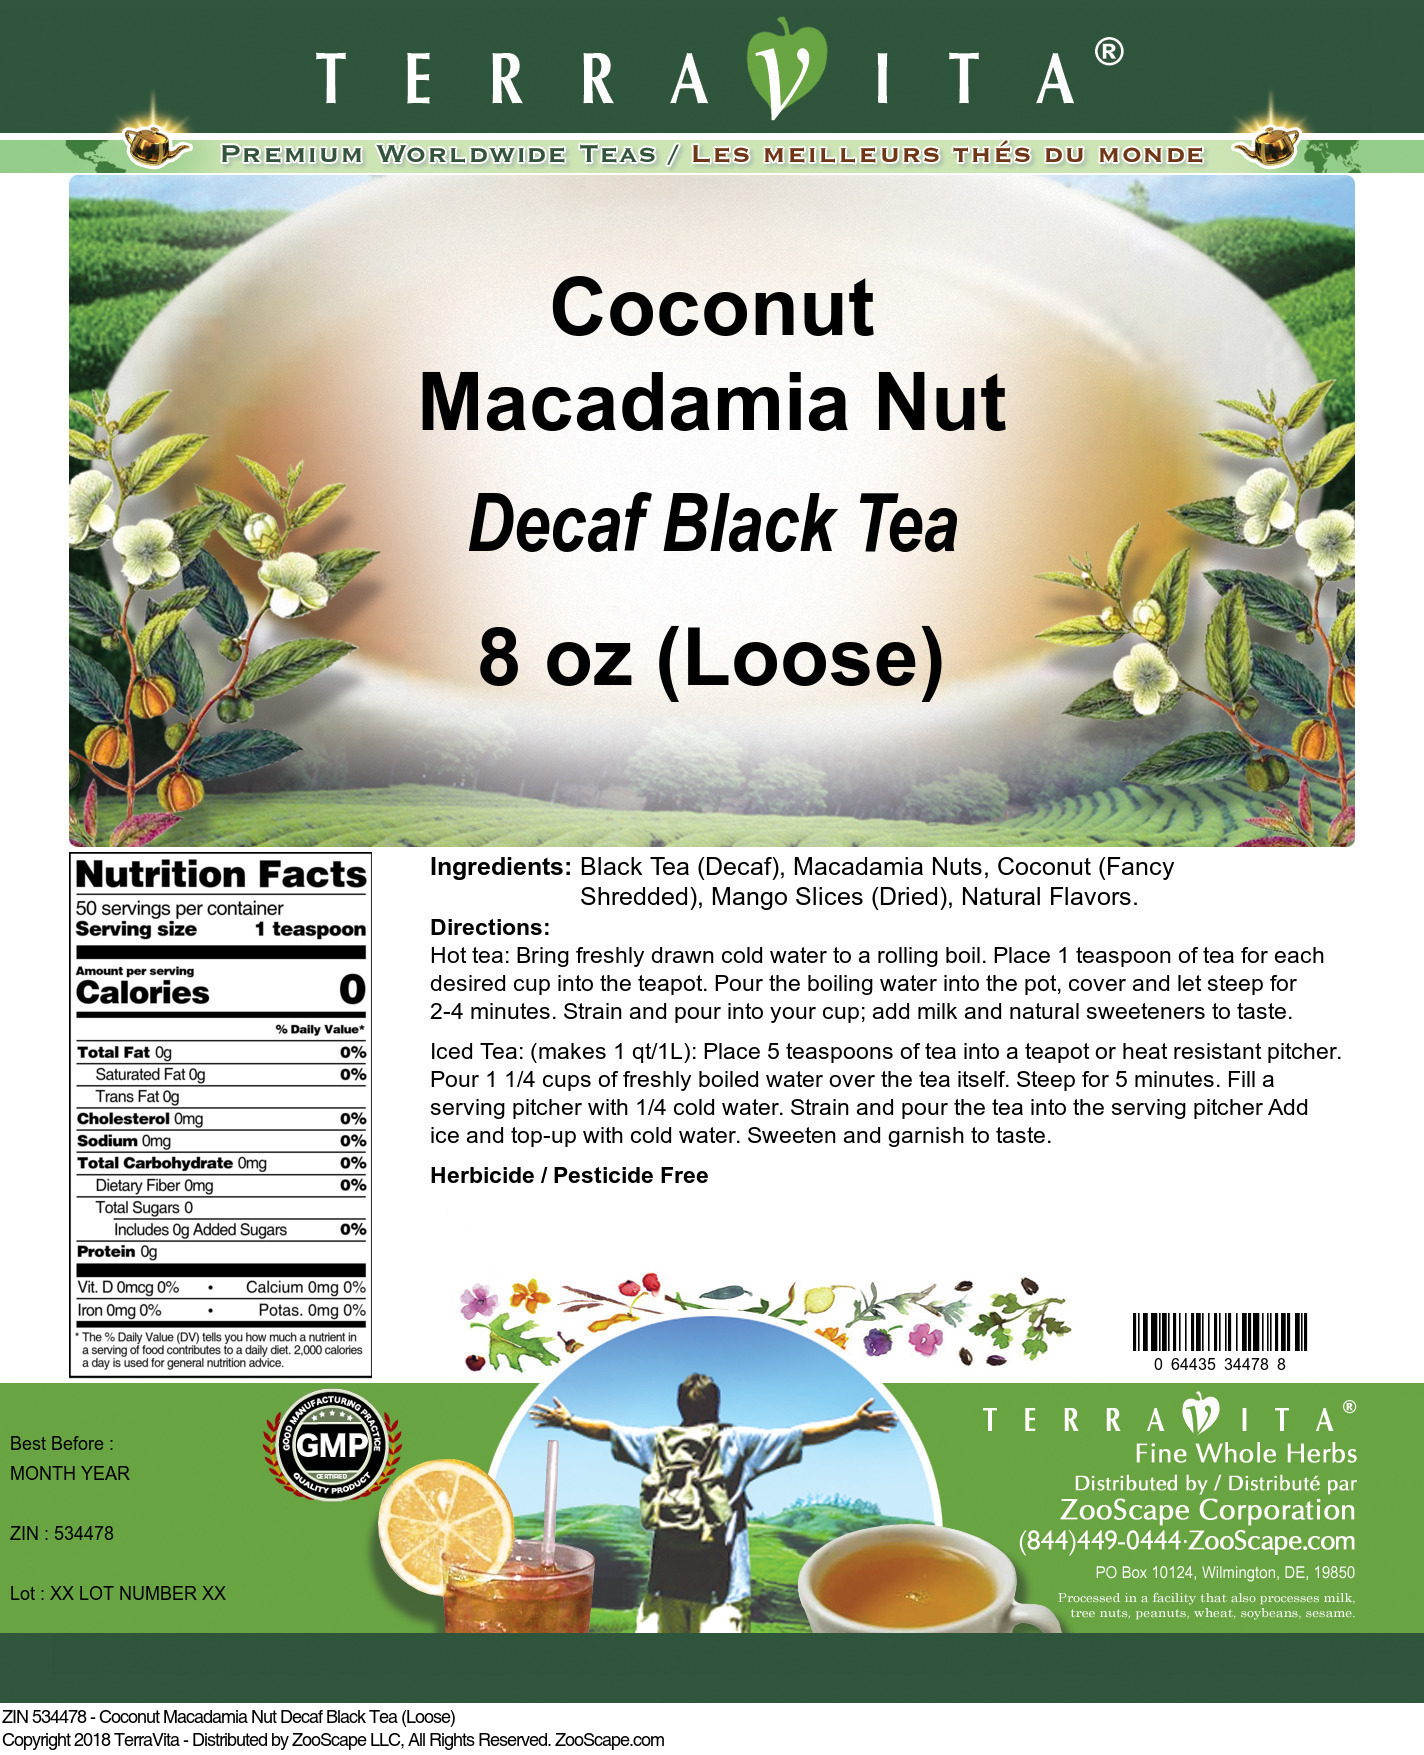 Coconut Macadamia Nut Decaf Black Tea (Loose) - Label